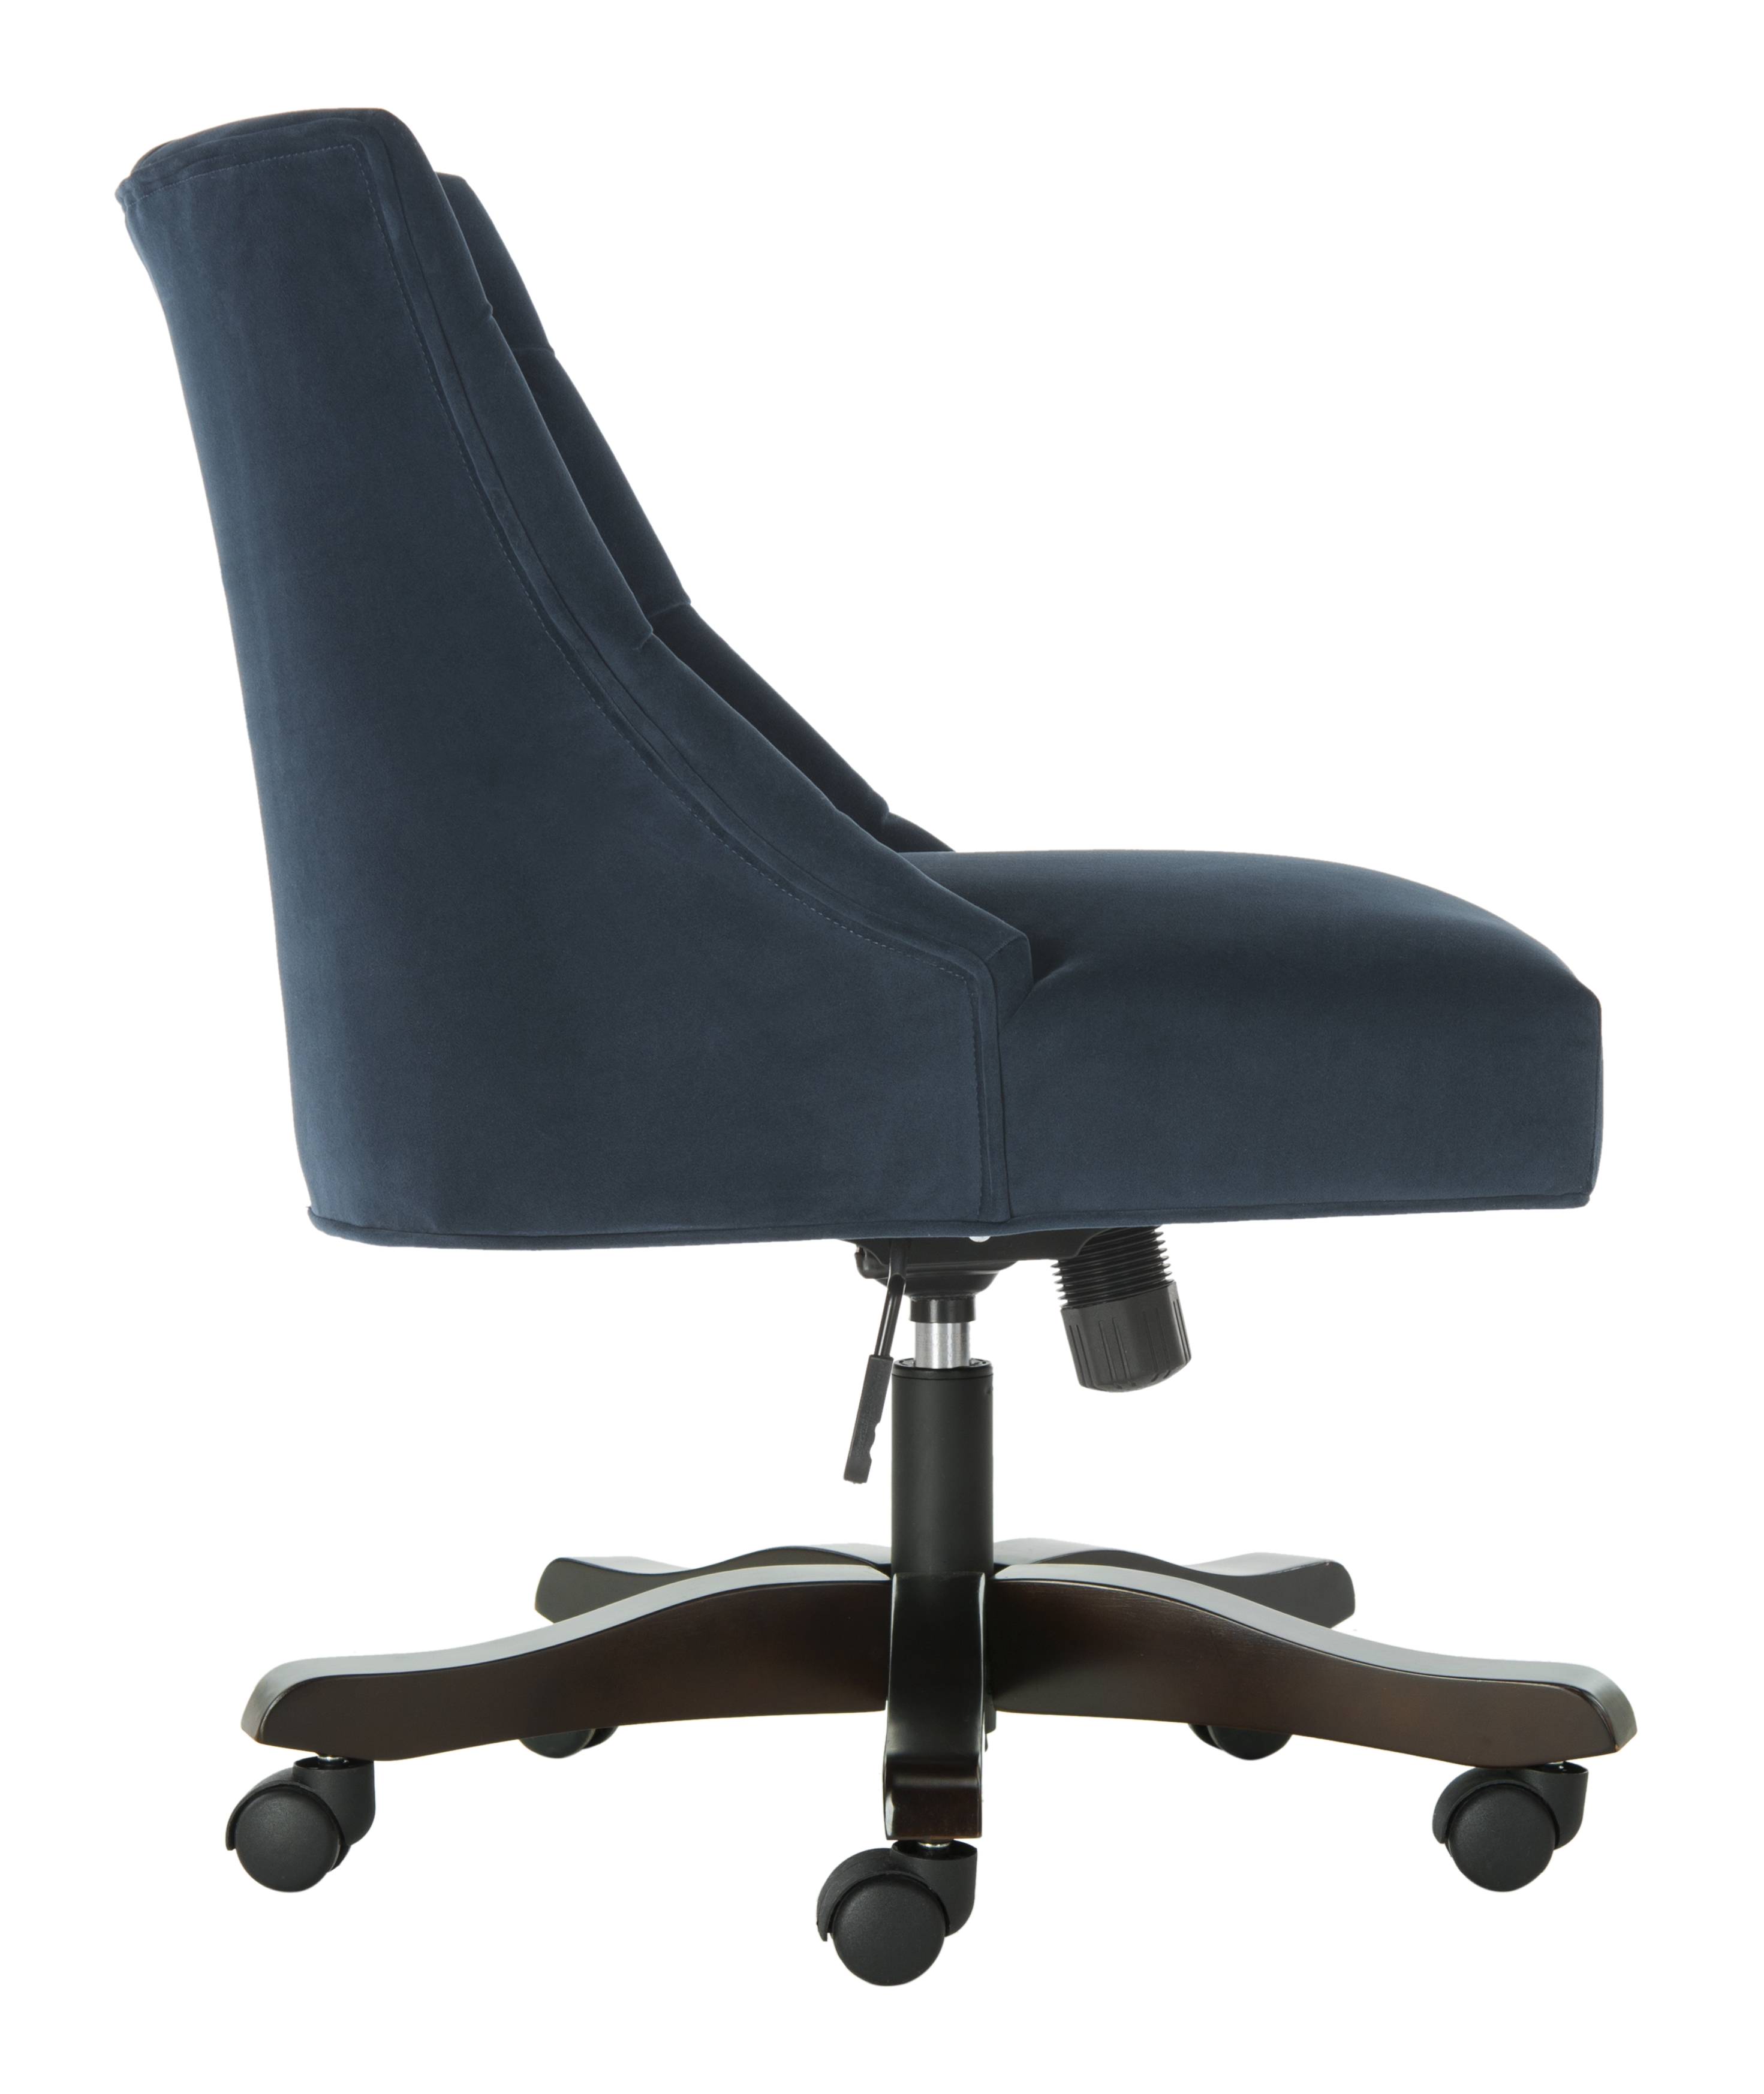 Soho Tufted Velvet Swivel Desk Chair - Navy - Safavieh - Image 1